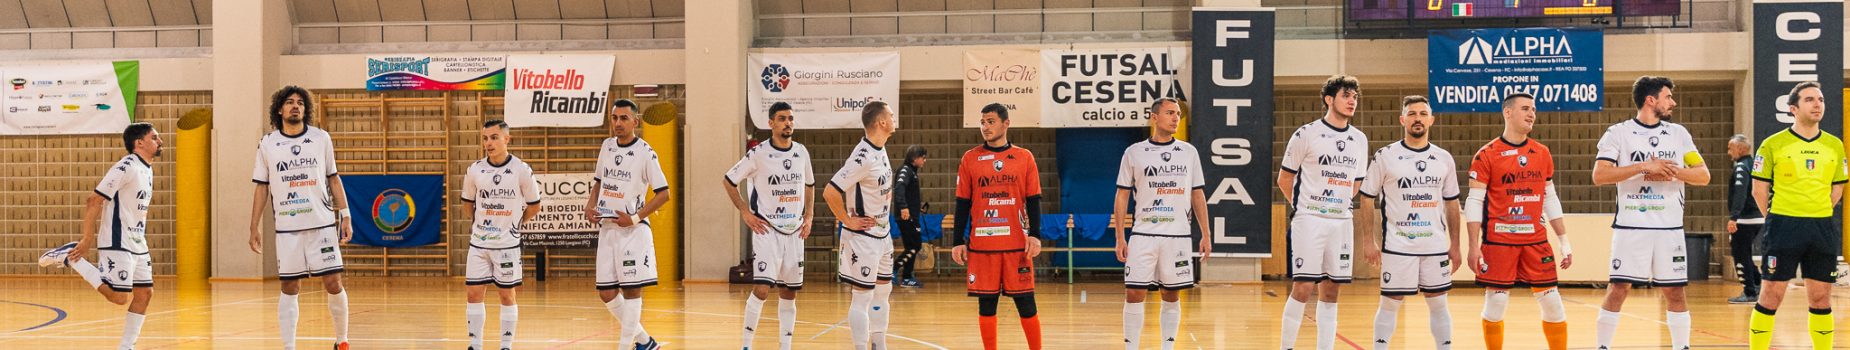 [Ottavi di finale] Prepartita Futsal Cesena-Active Network Futsal